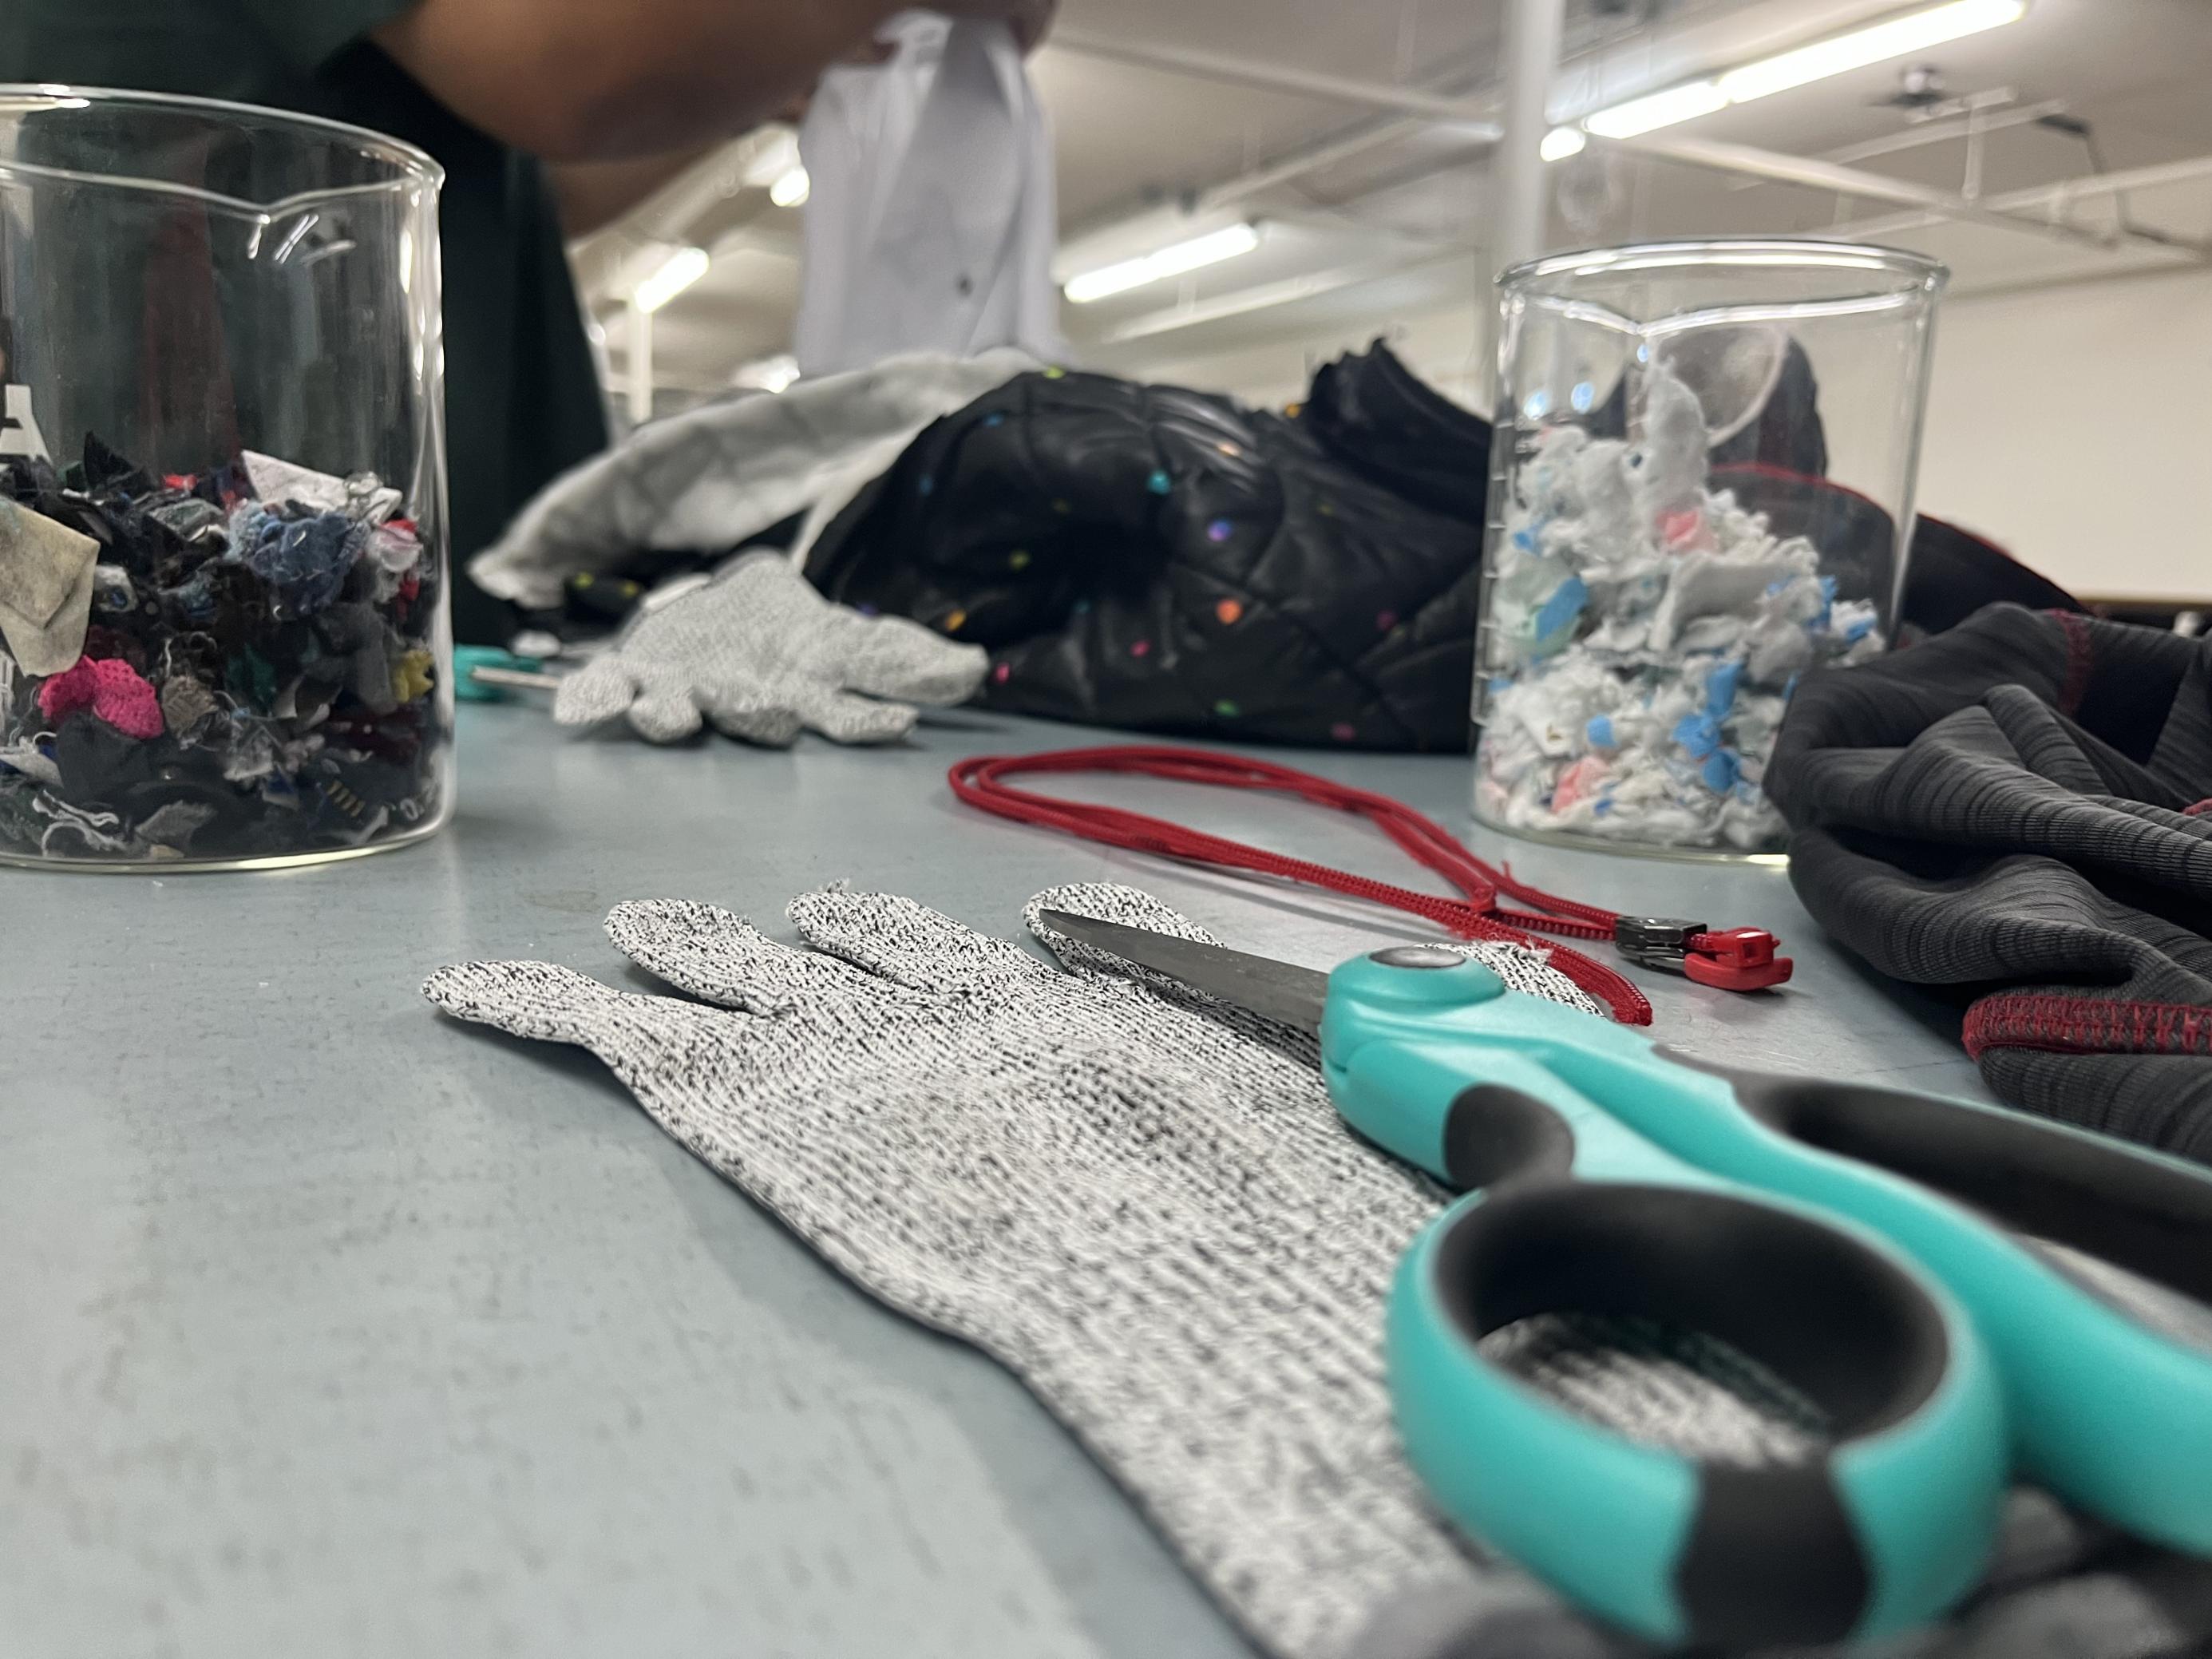 Scheren, Reissverschlüsse, Stoffetzen und ein Kleiderberg türmen sich auf einem Tisch im Ambercycle-Labor. Studierende versuchen hier, Polyester zu isolieren. Vergeblich.